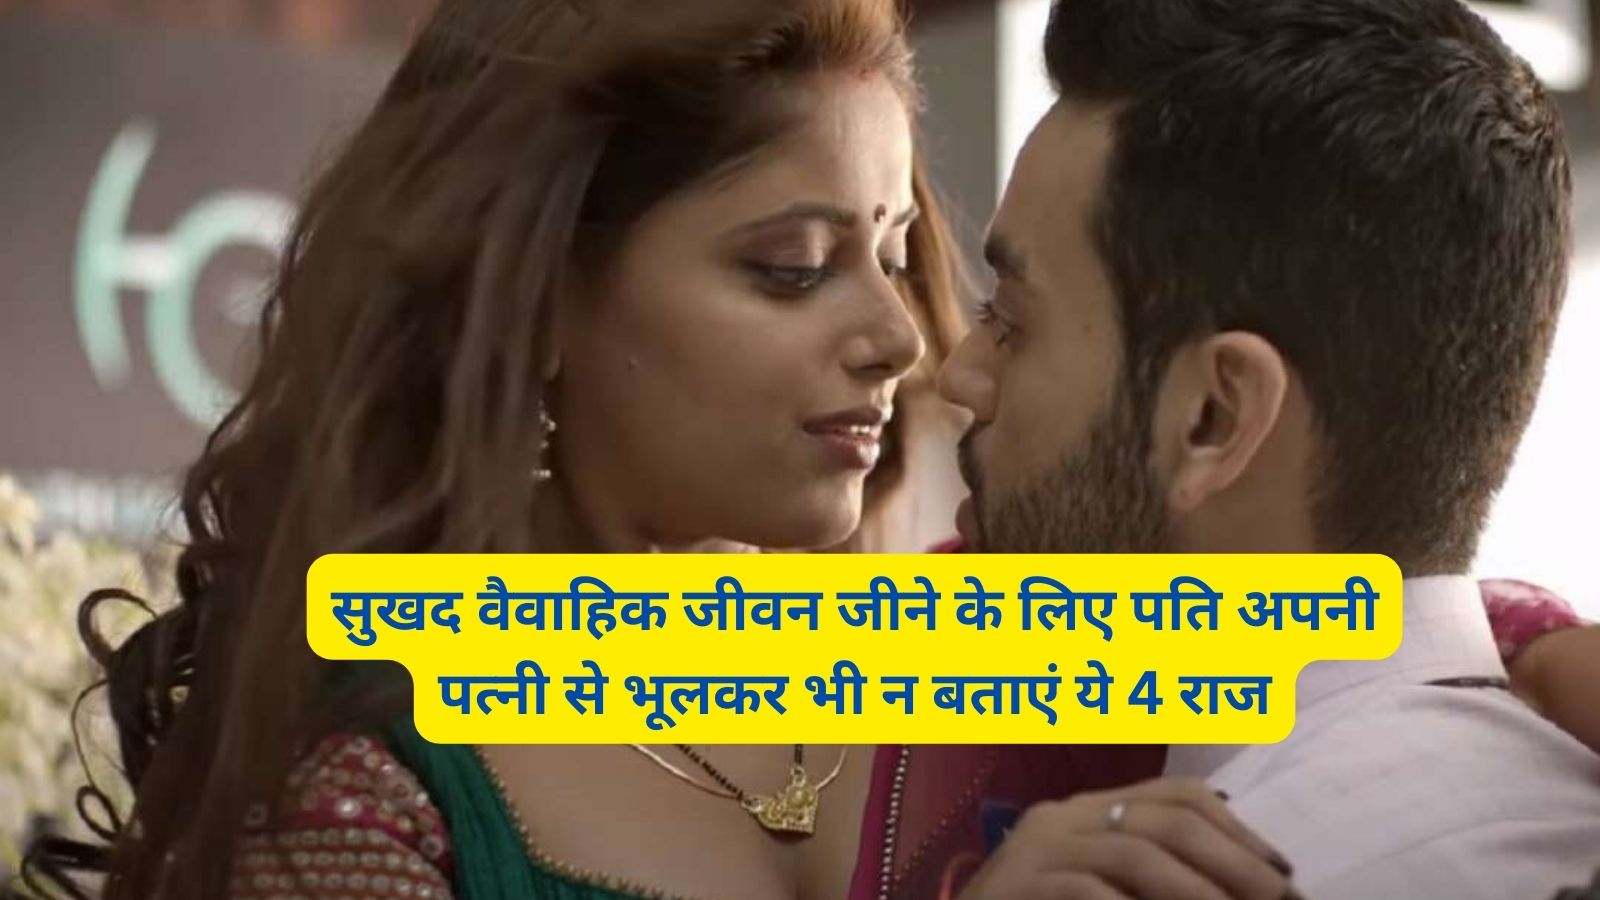 Chanakya Niti: सुखद वैवाहिक जीवन जीने के लिए पति अपनी पत्नी से भूलकर भी न बताएं ये 4 राज,बढ़ेगा आपस में प्यार